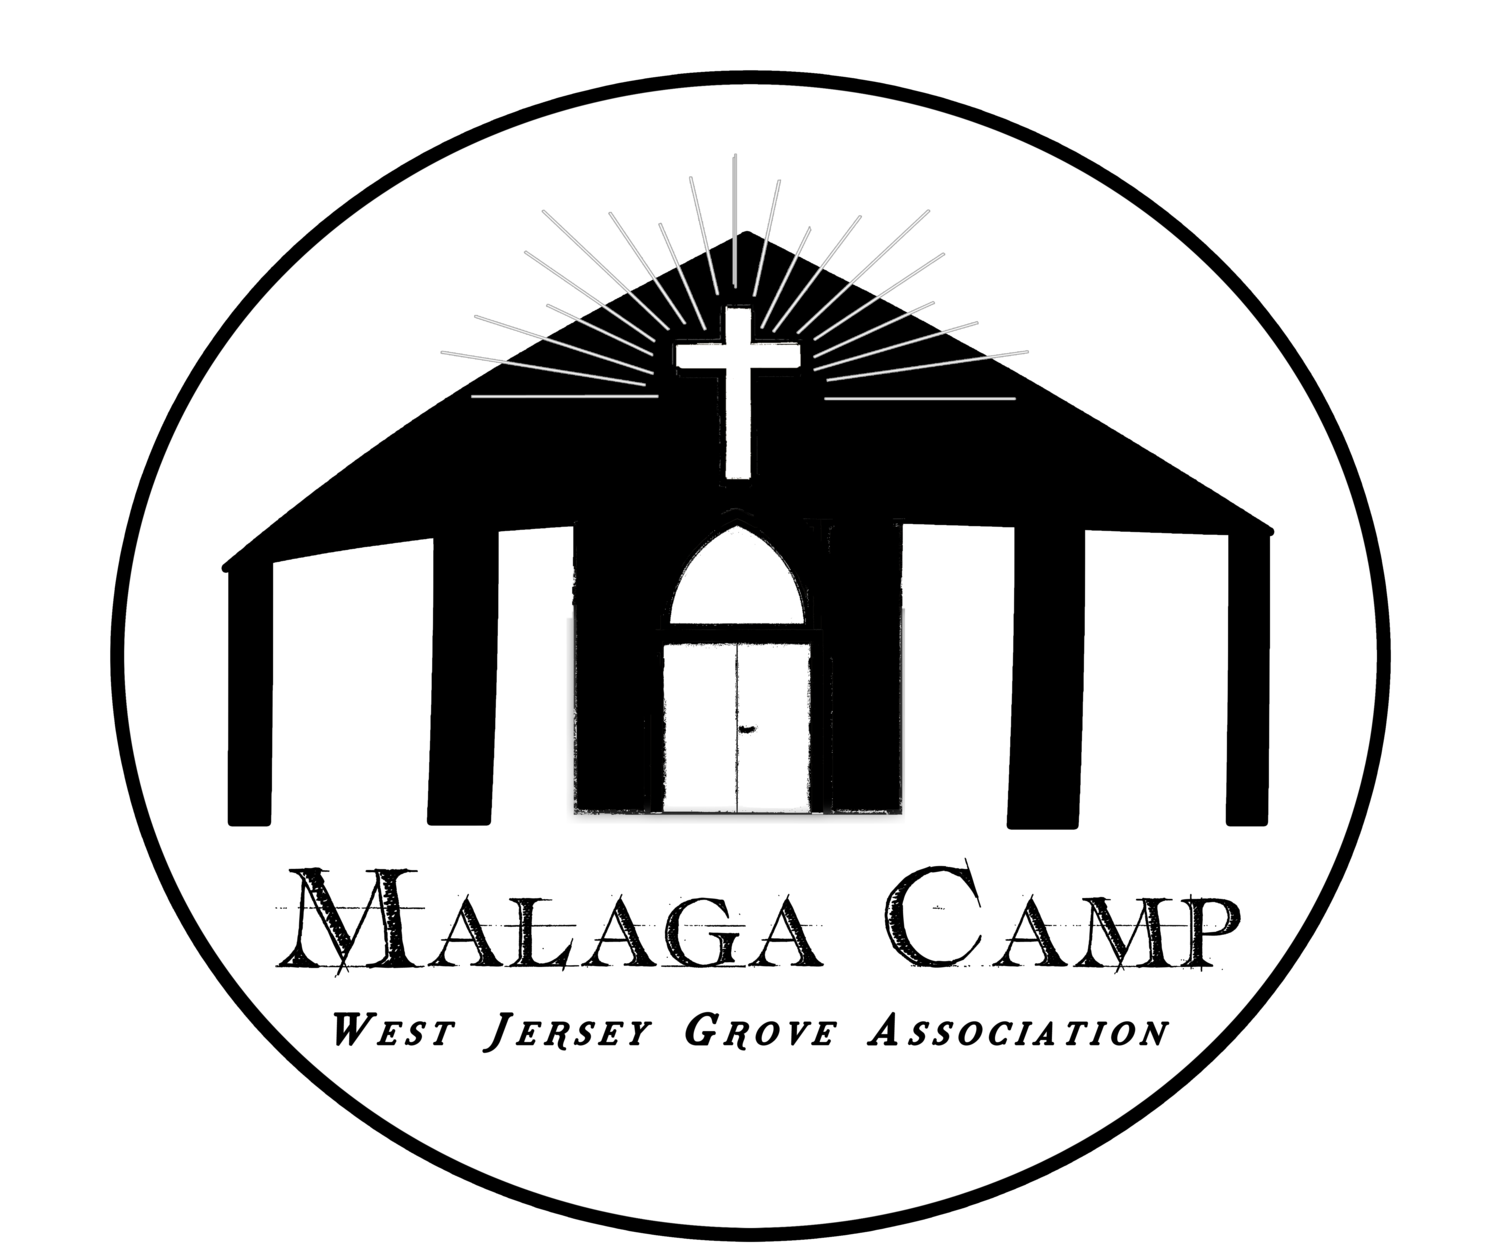 Malaga Camp Meeting Assembly